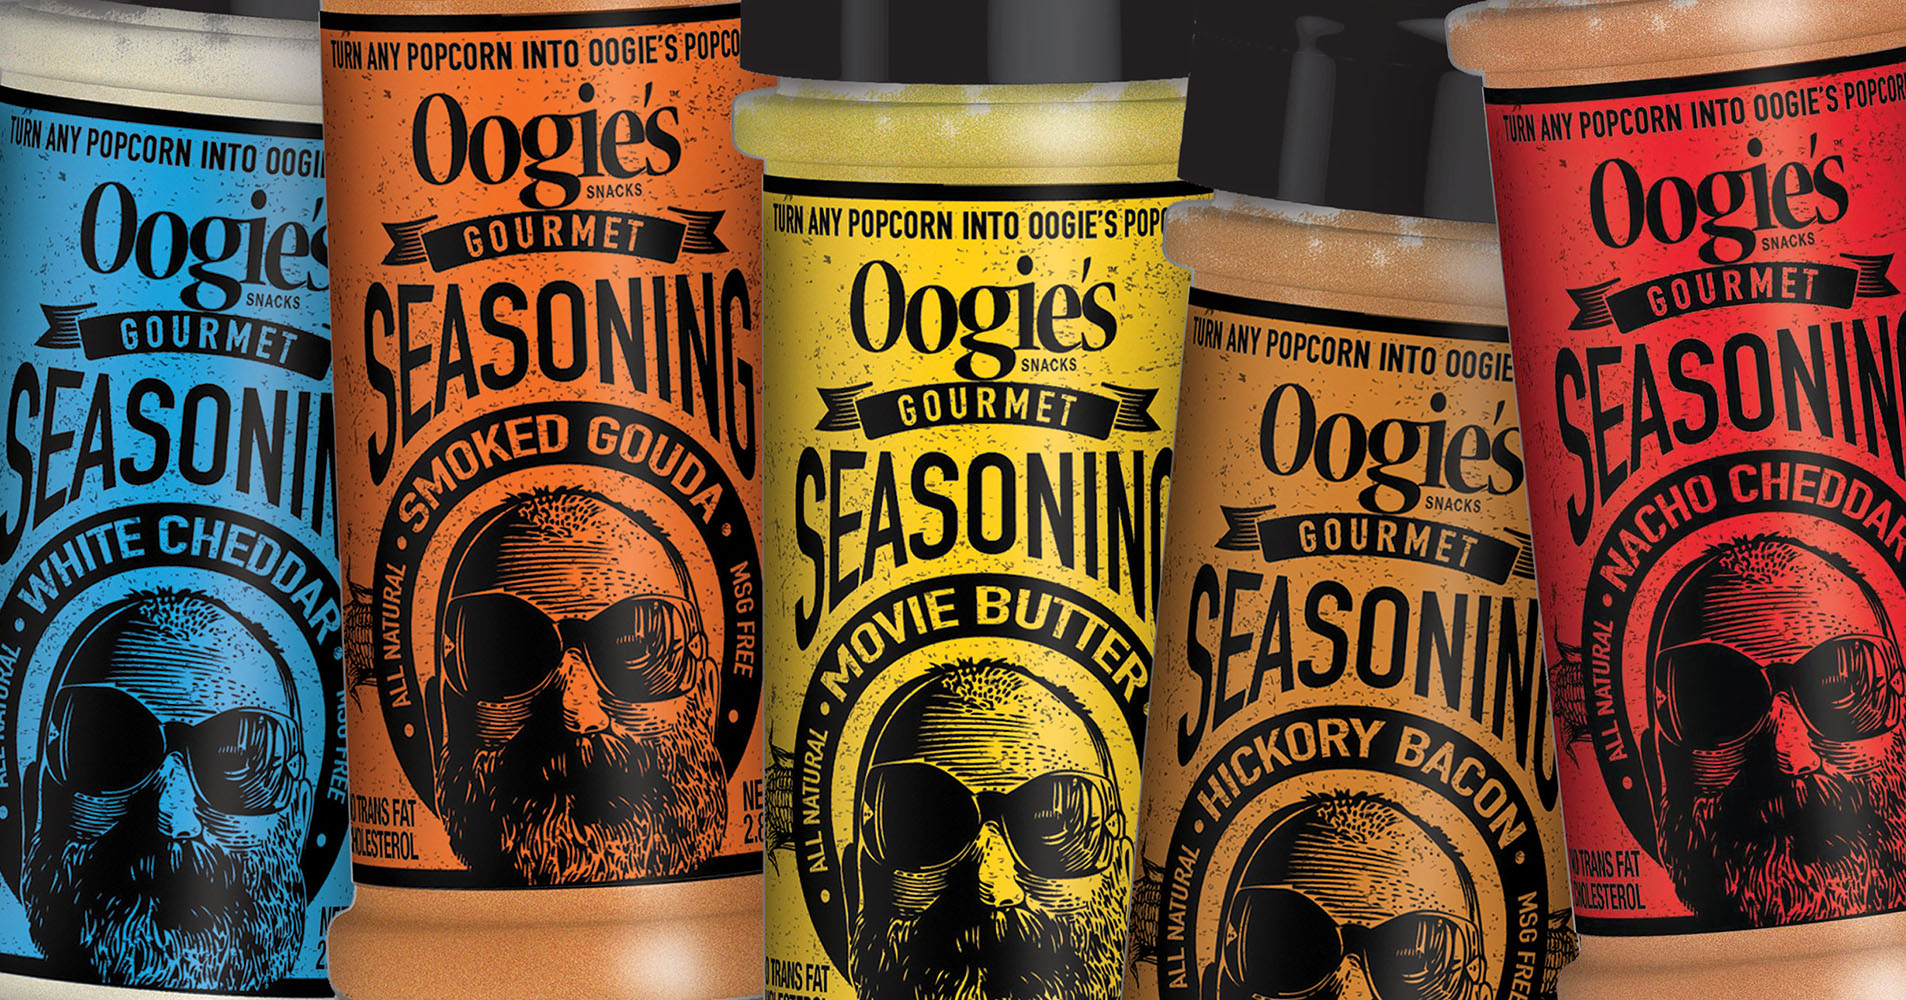 Oogie's Snacks Premium Popcorn Seasonings